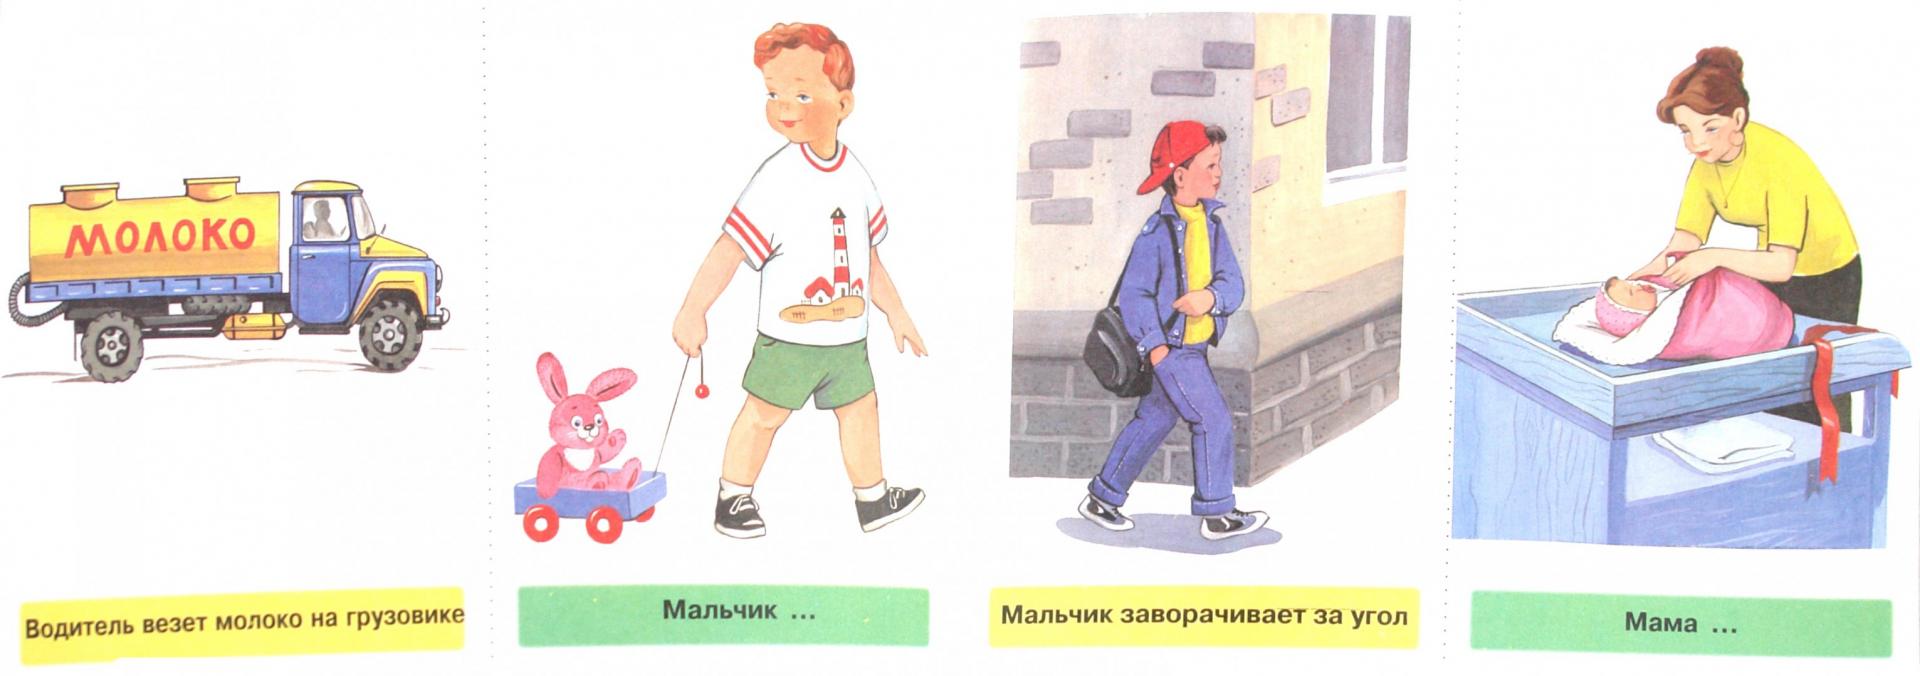 Иллюстрация 1 из 36 для Многозначность глаголов в русском языке. 48 цветных карточек для дидактических игр - Коноваленко, Коноваленко | Лабиринт - книги. Источник: Лабиринт